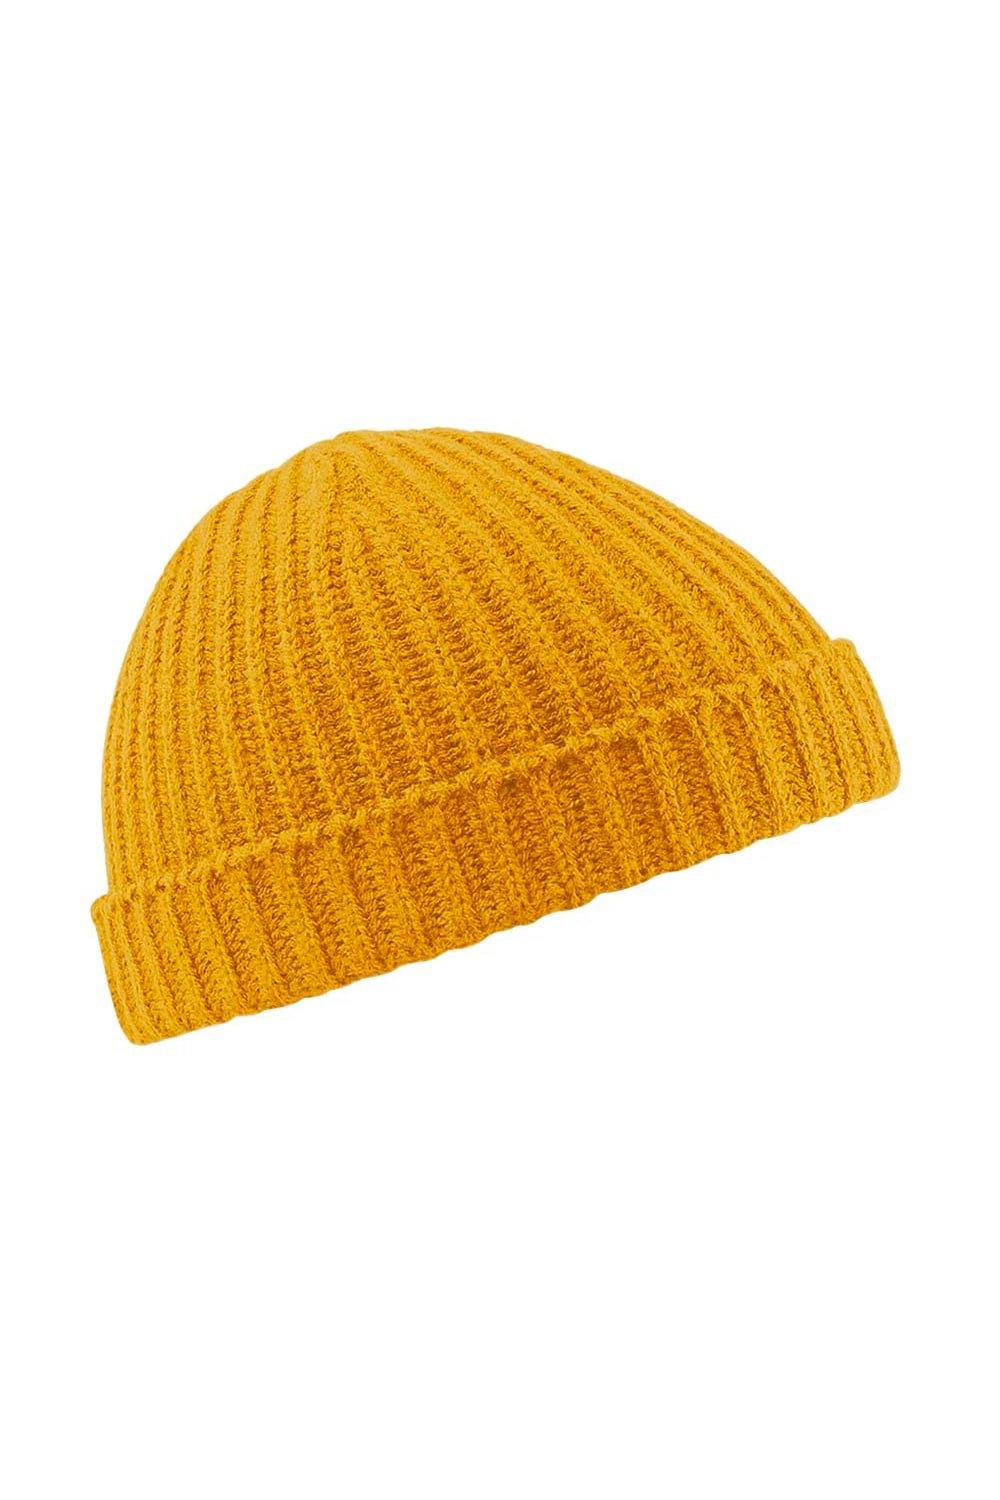 хюгге бини beechfield желтый Зимняя шапка-бини в стиле ретро-траулера Beechfield, желтый